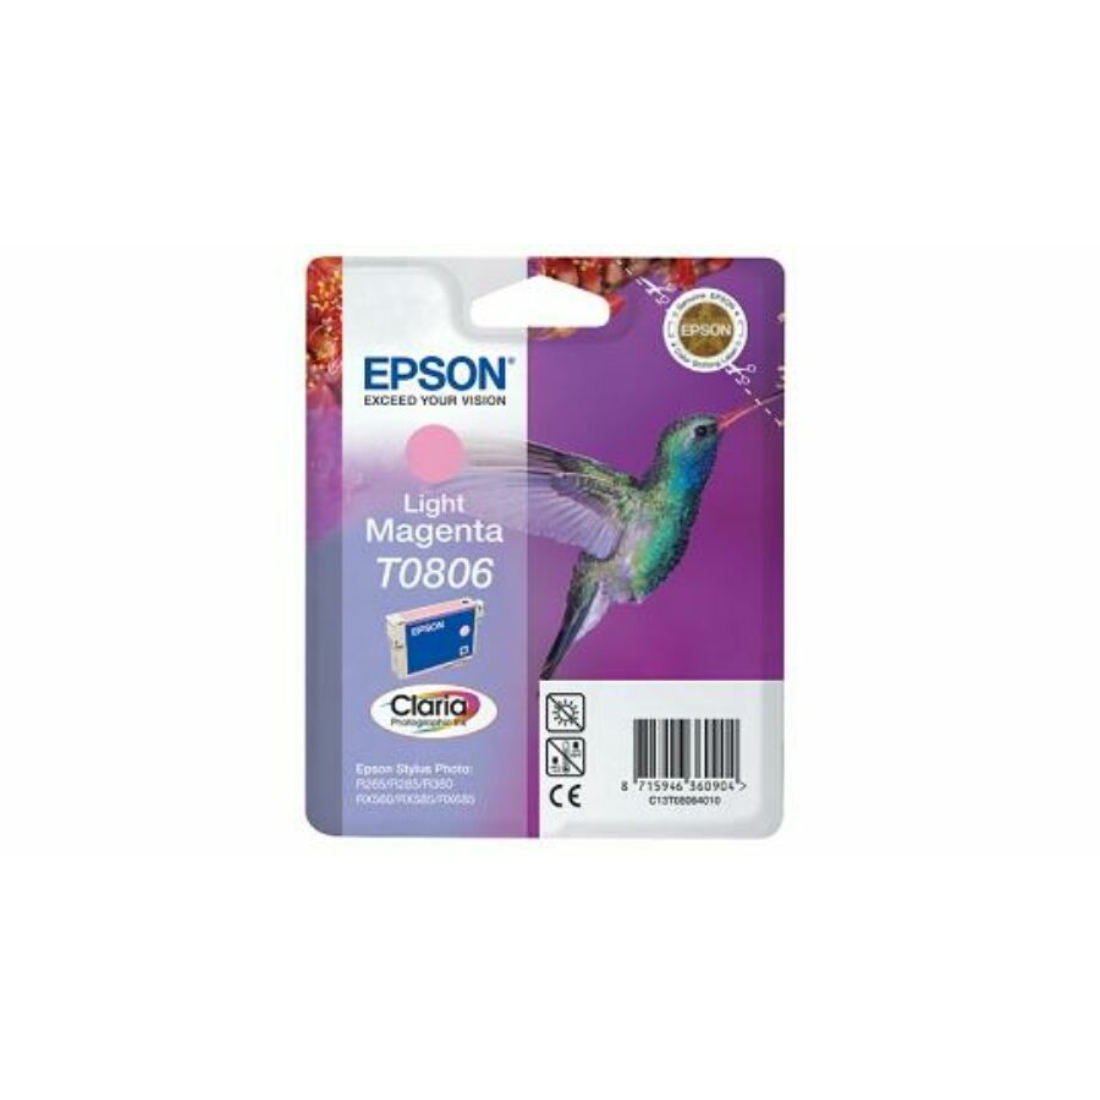 Epson T0806 világos magenta eredeti tintapatron